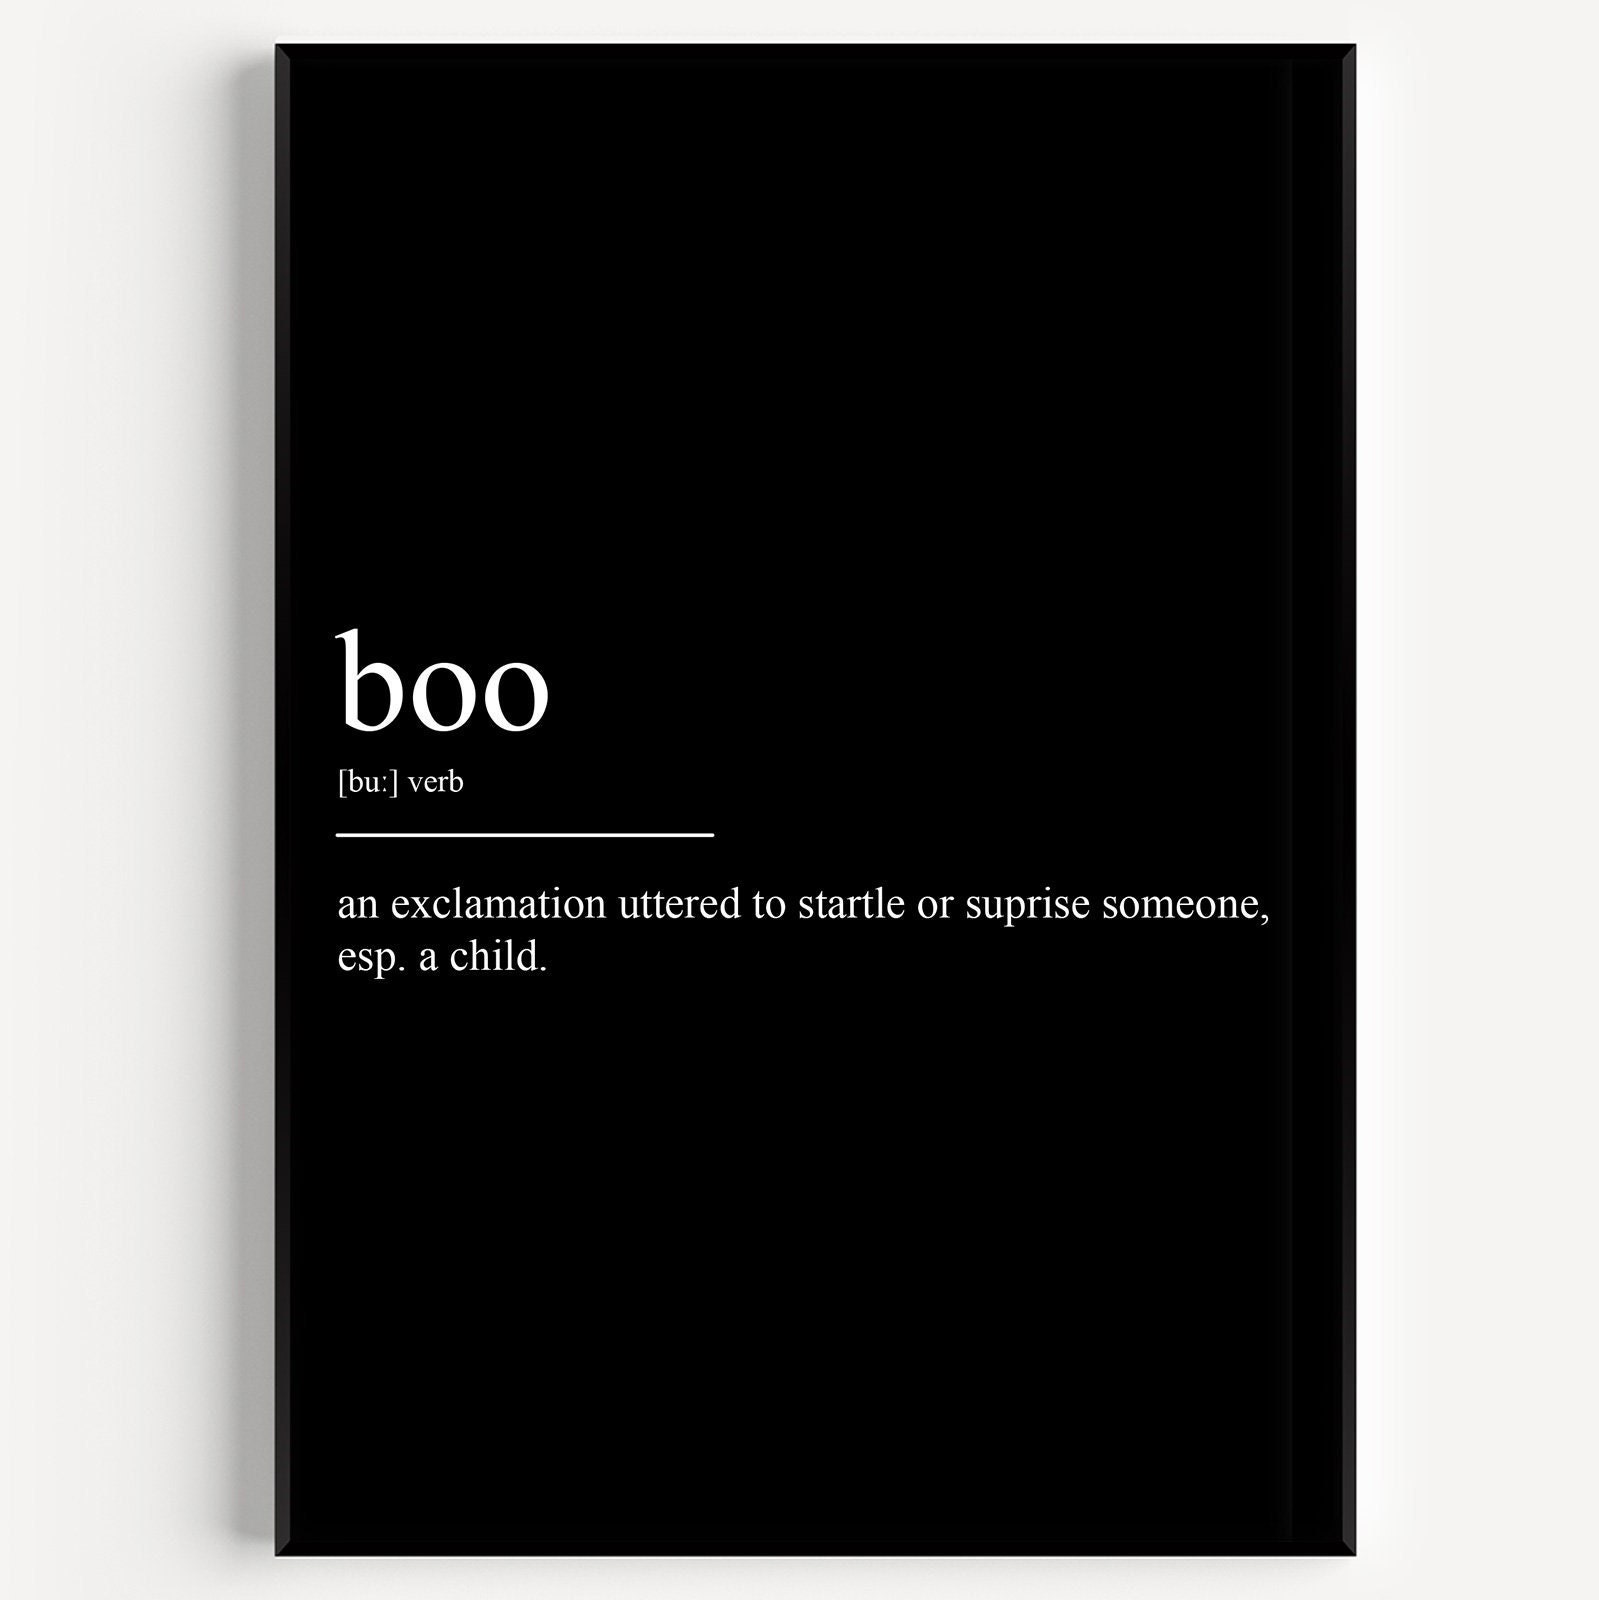 Impression de définition de Boo - Etsy France